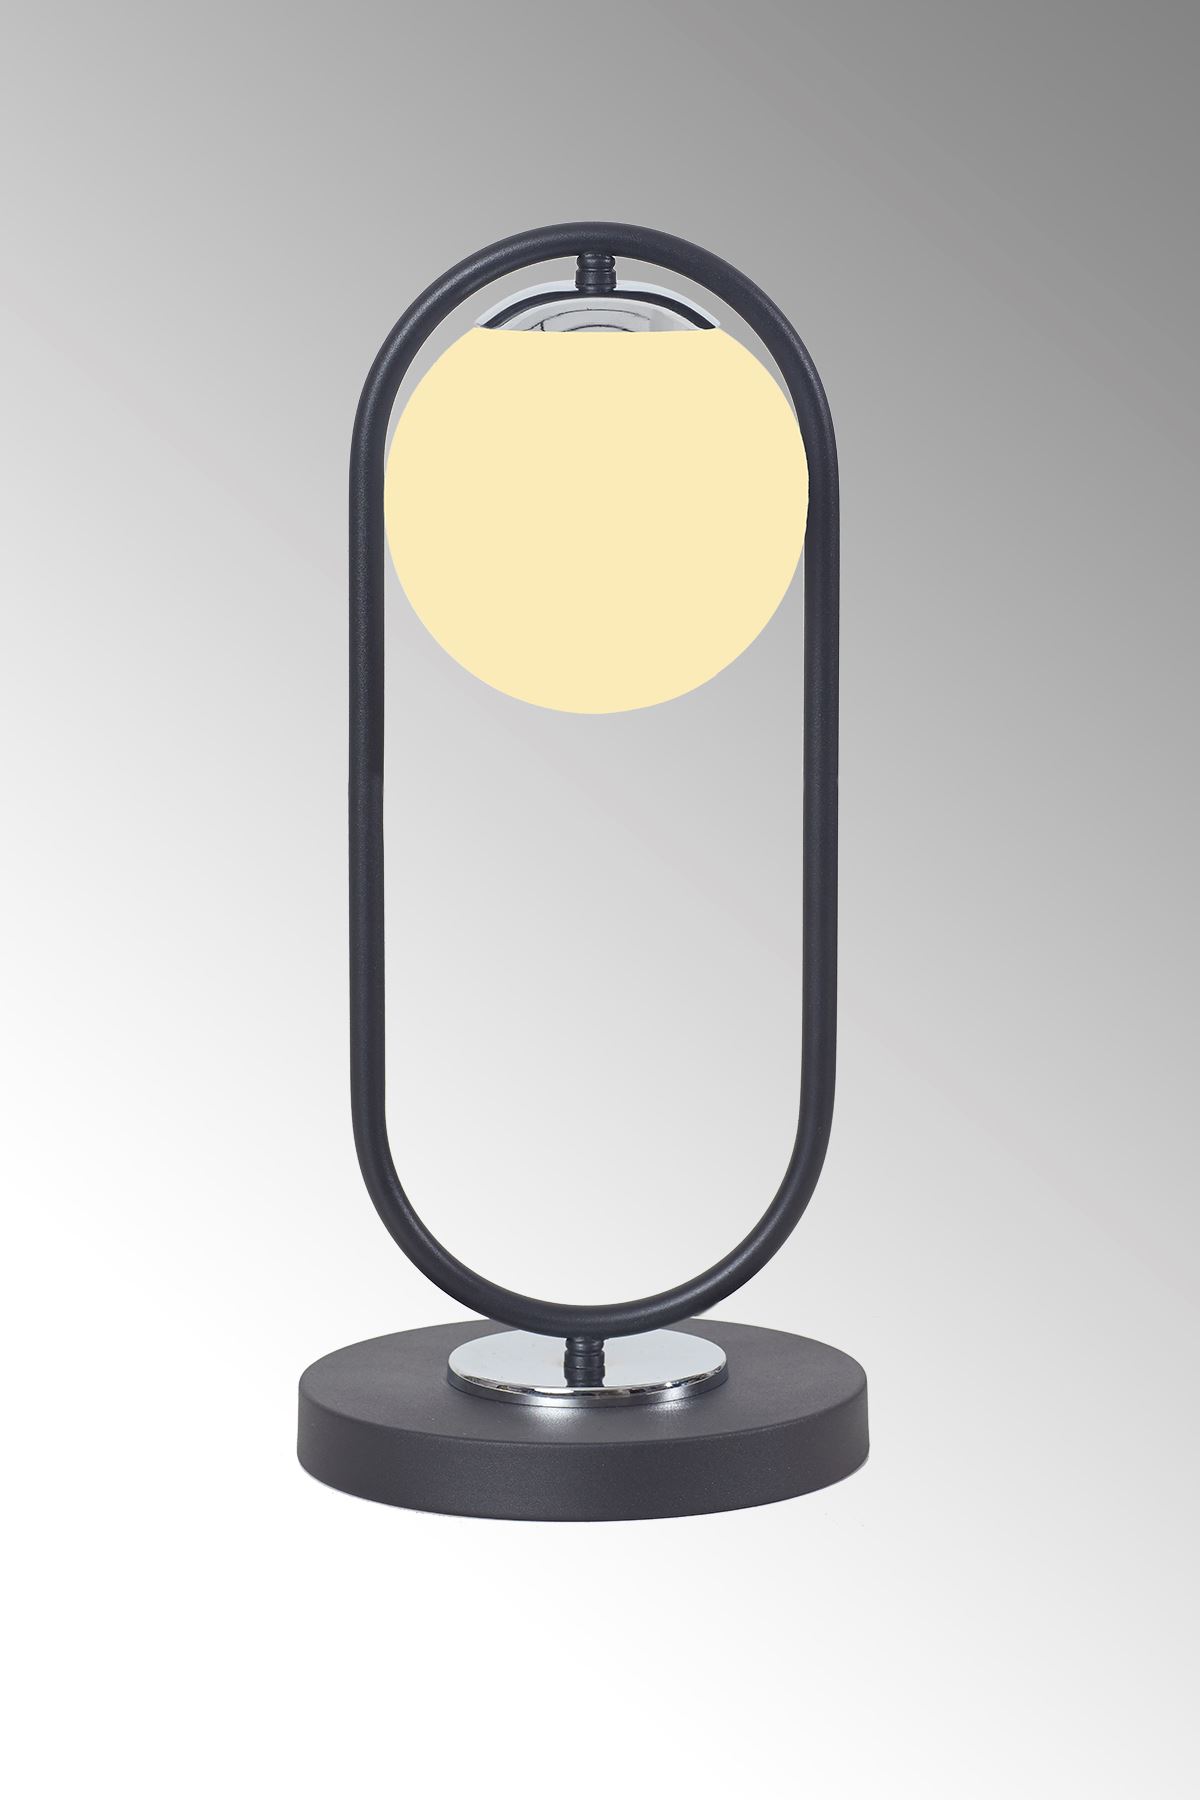 Zenga Siyah-Krom Metal Gövde Beyaz Camlı Tasarım Lüx Masa Lambası